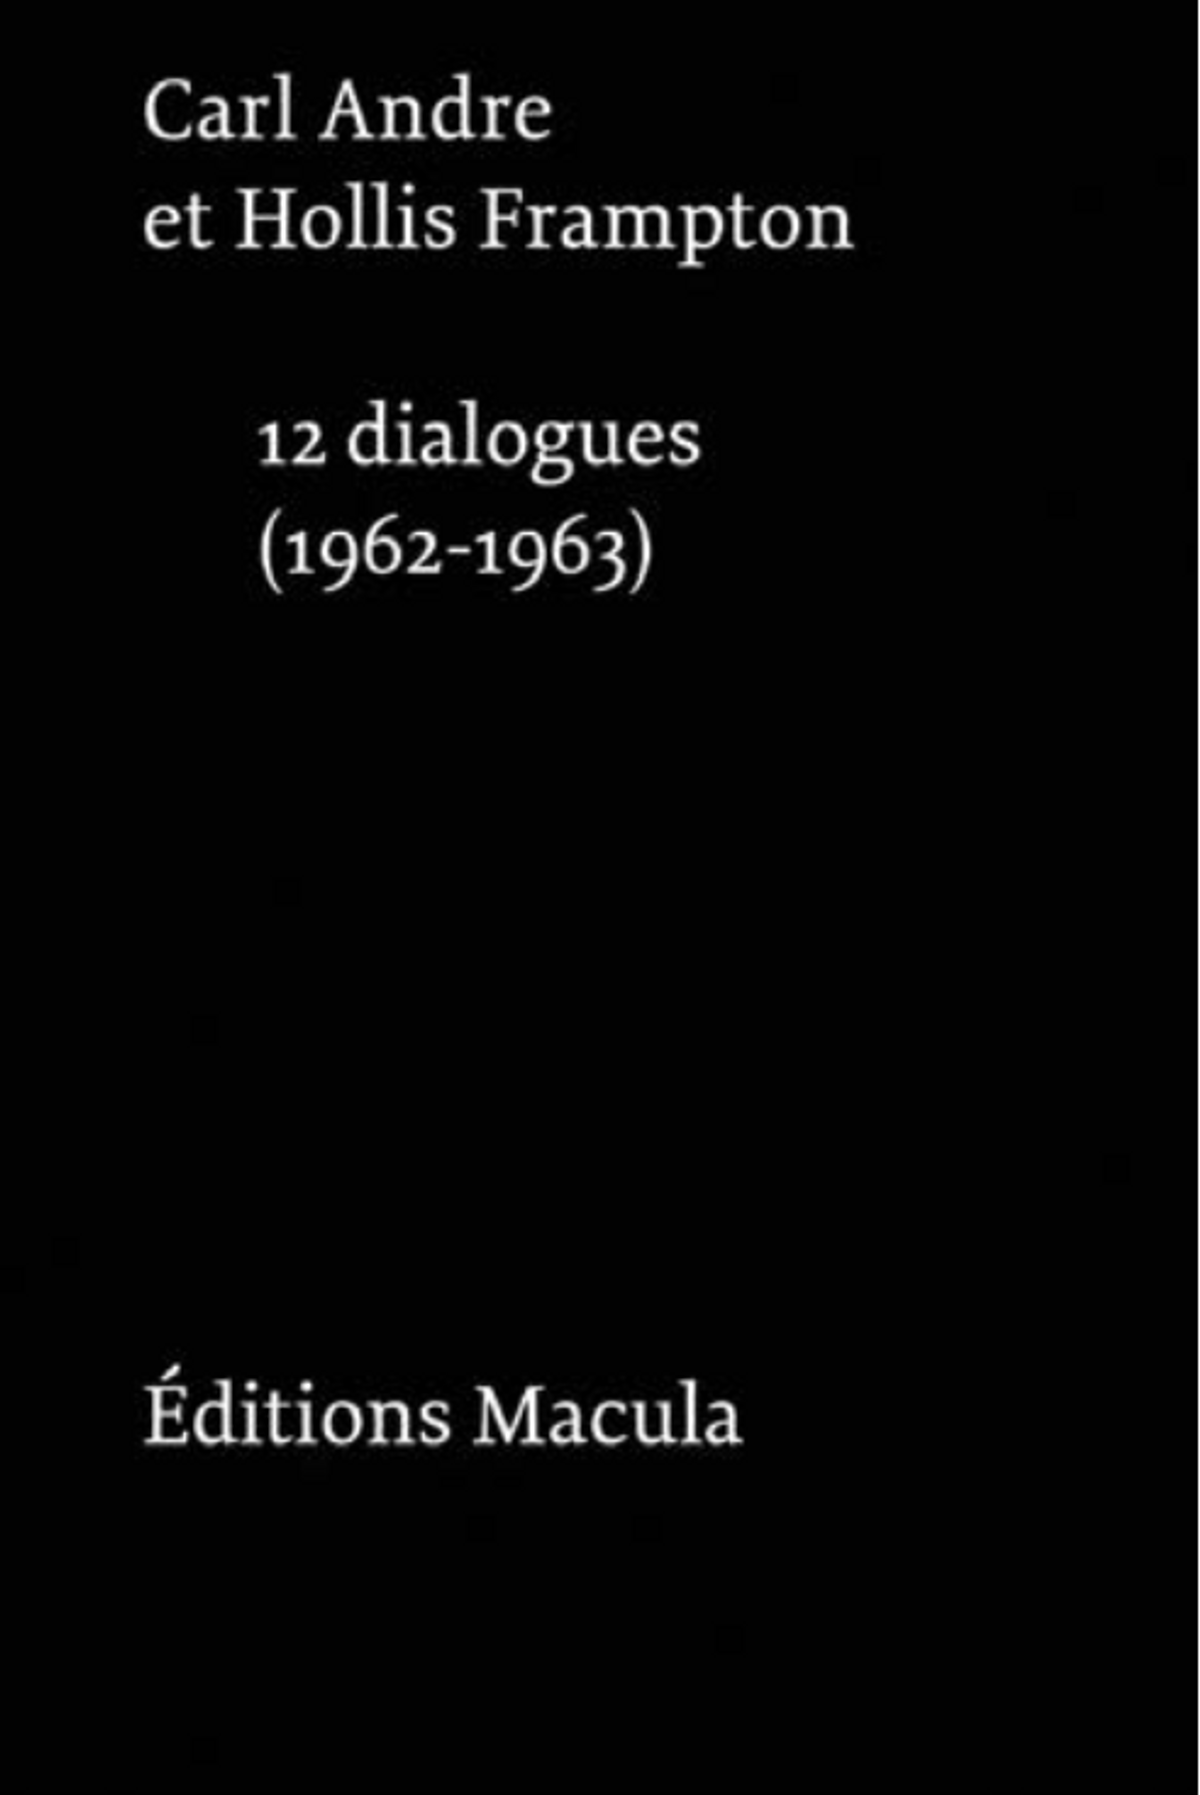 Carl Andre et Hollis Frampton, Douze dialogues, 1962-1963, Paris, Éditions Macula.